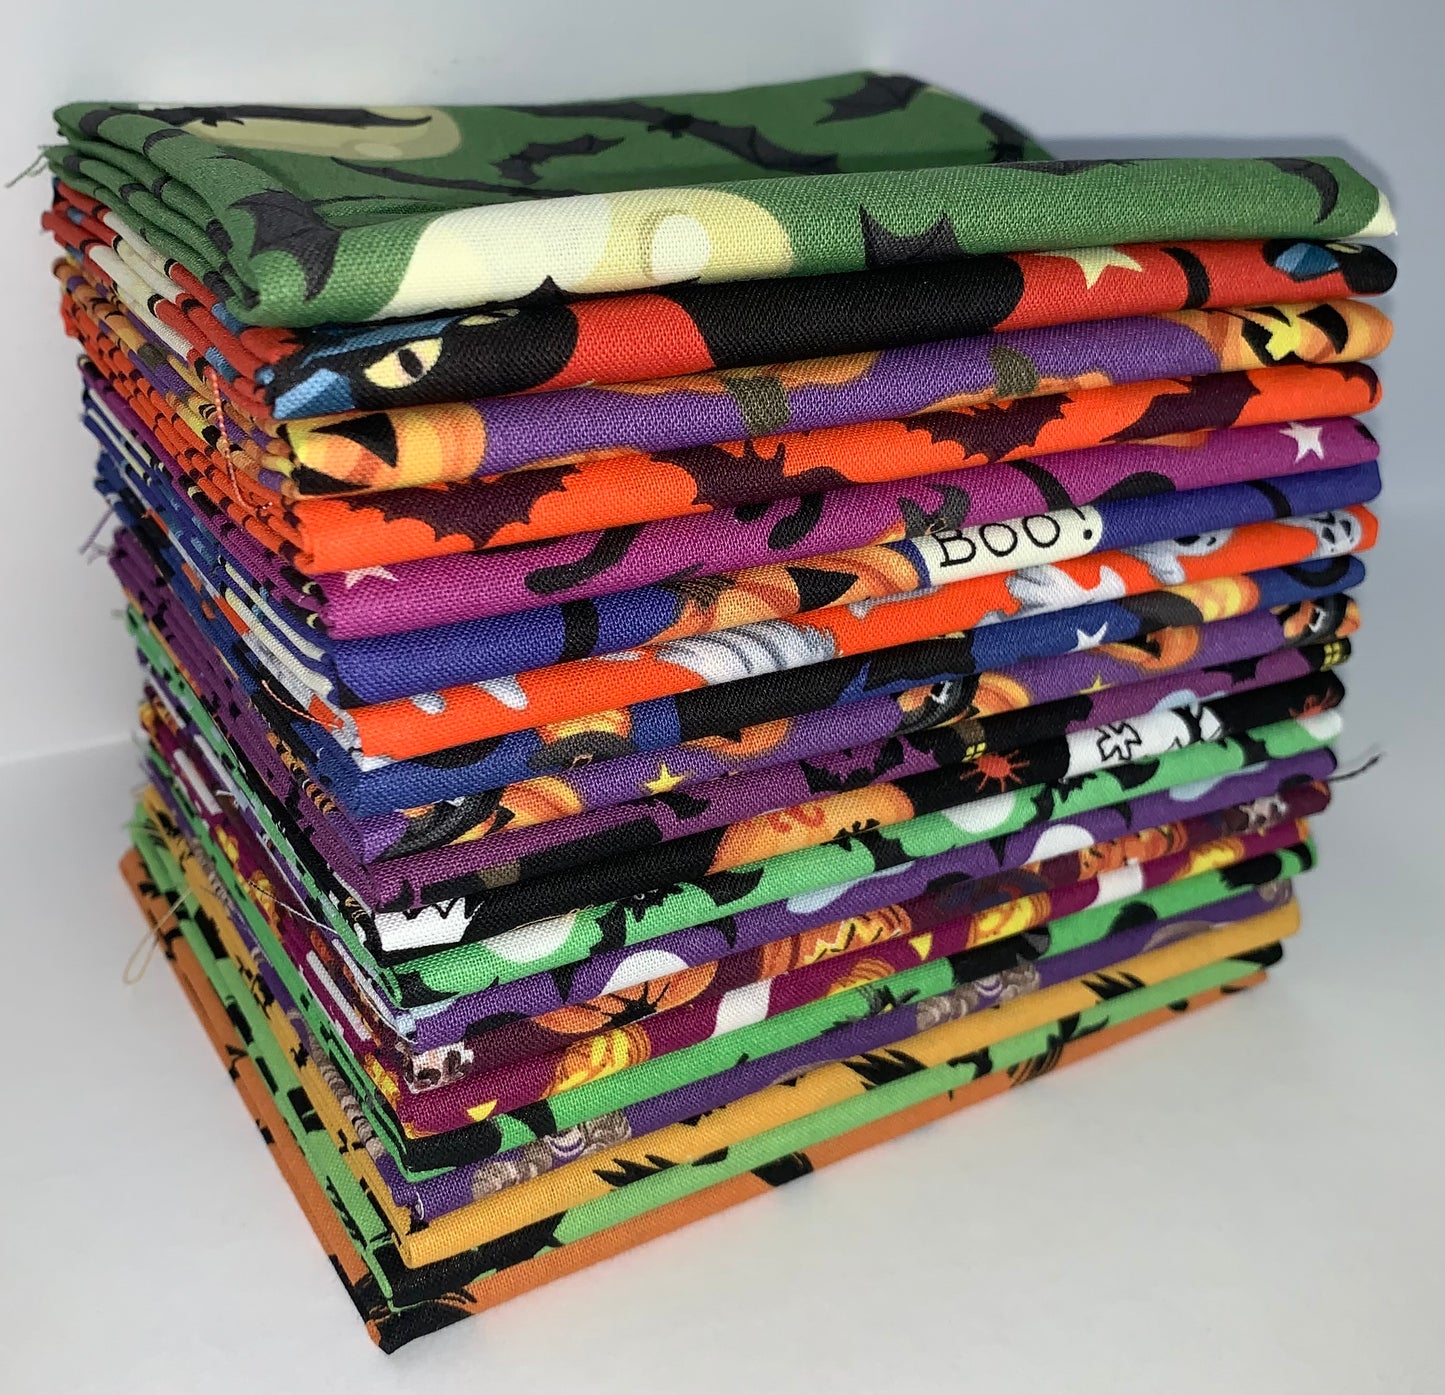 Craft Halloween Fat Quarter Bundle - 20 Fabrics, 20 Total Fat Quarters